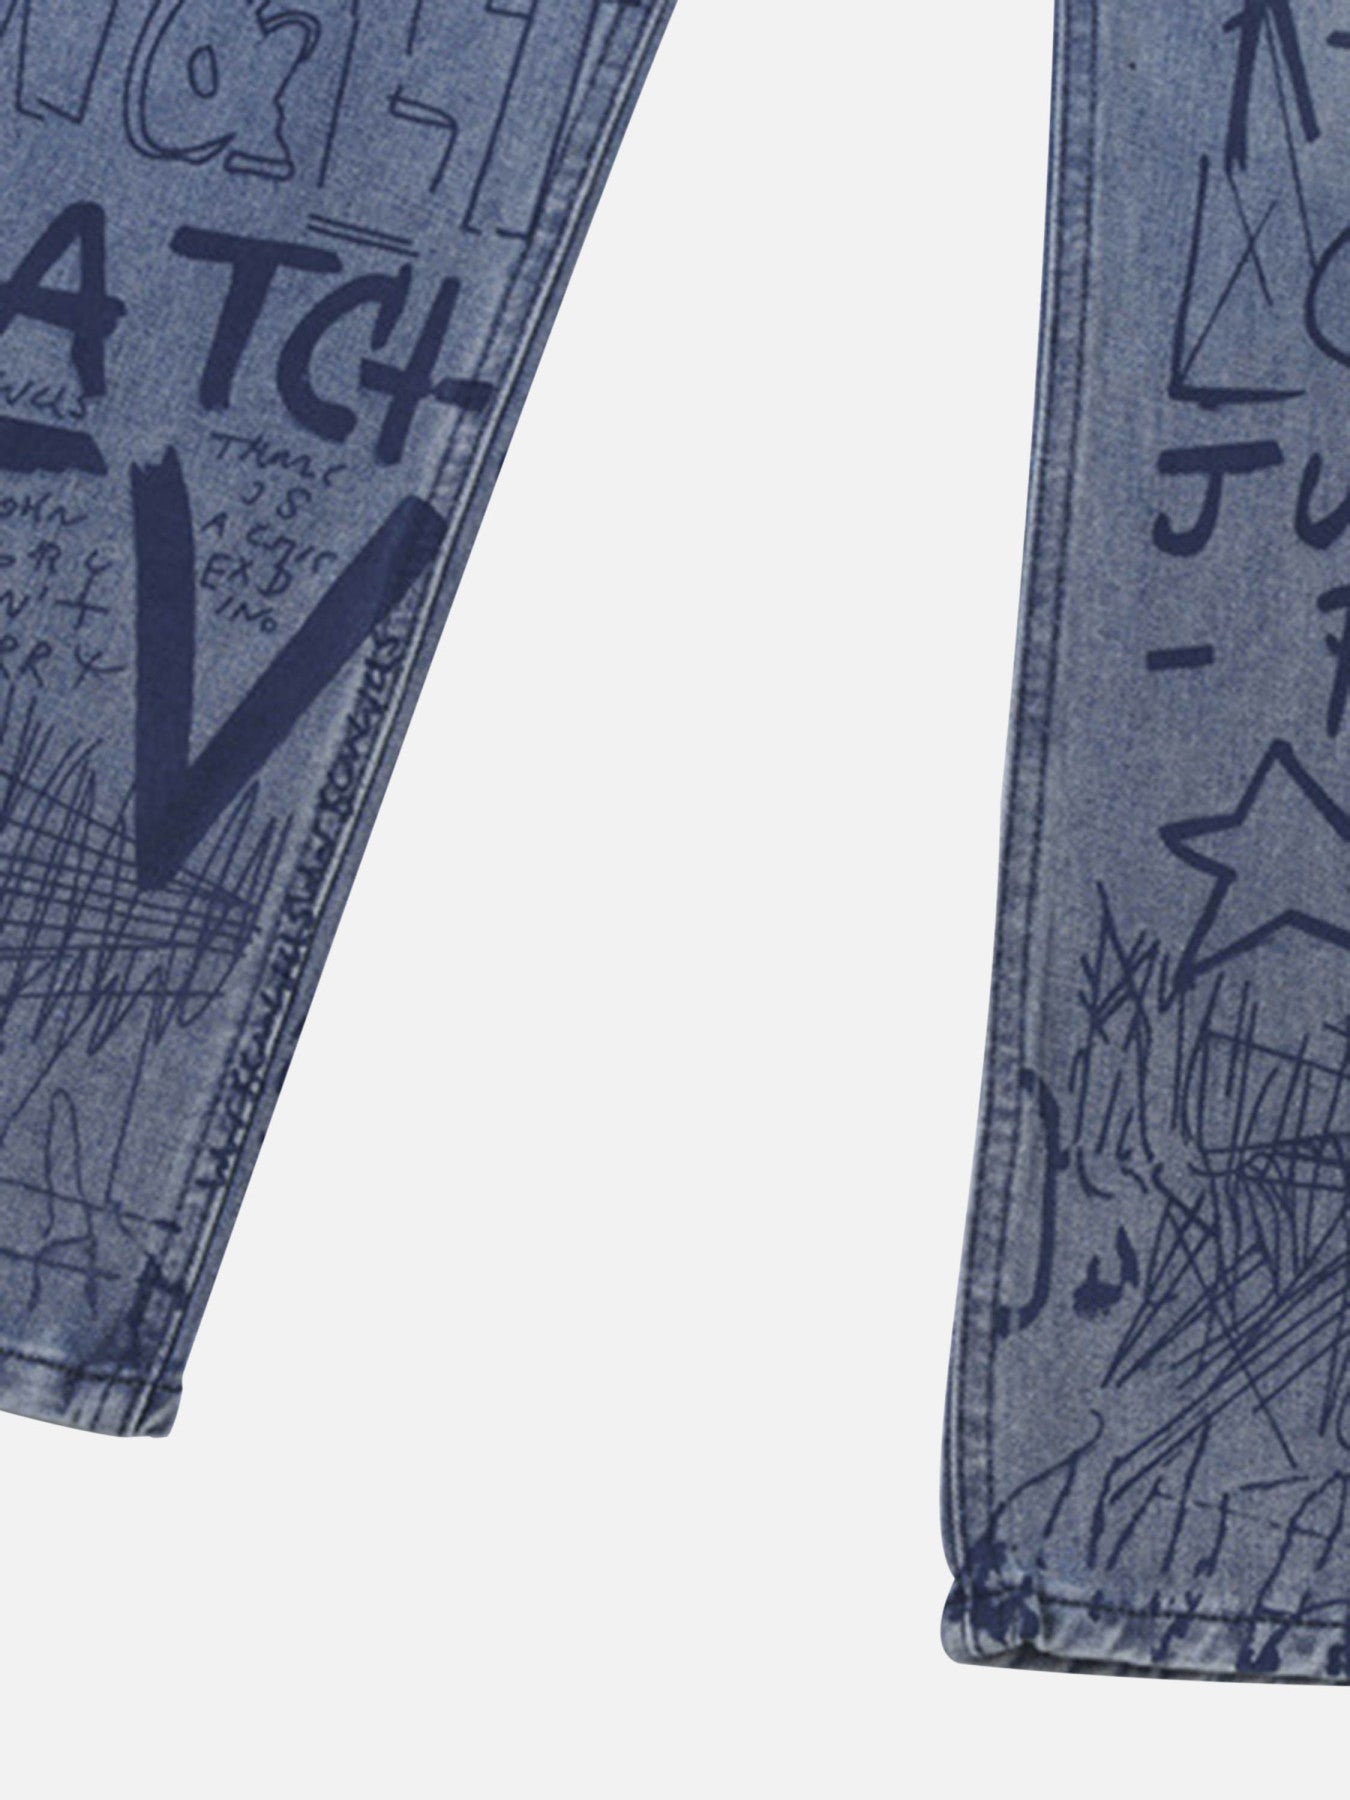 Thesupermade Hip-hop Graffiti Alphabet Jeans - 1743